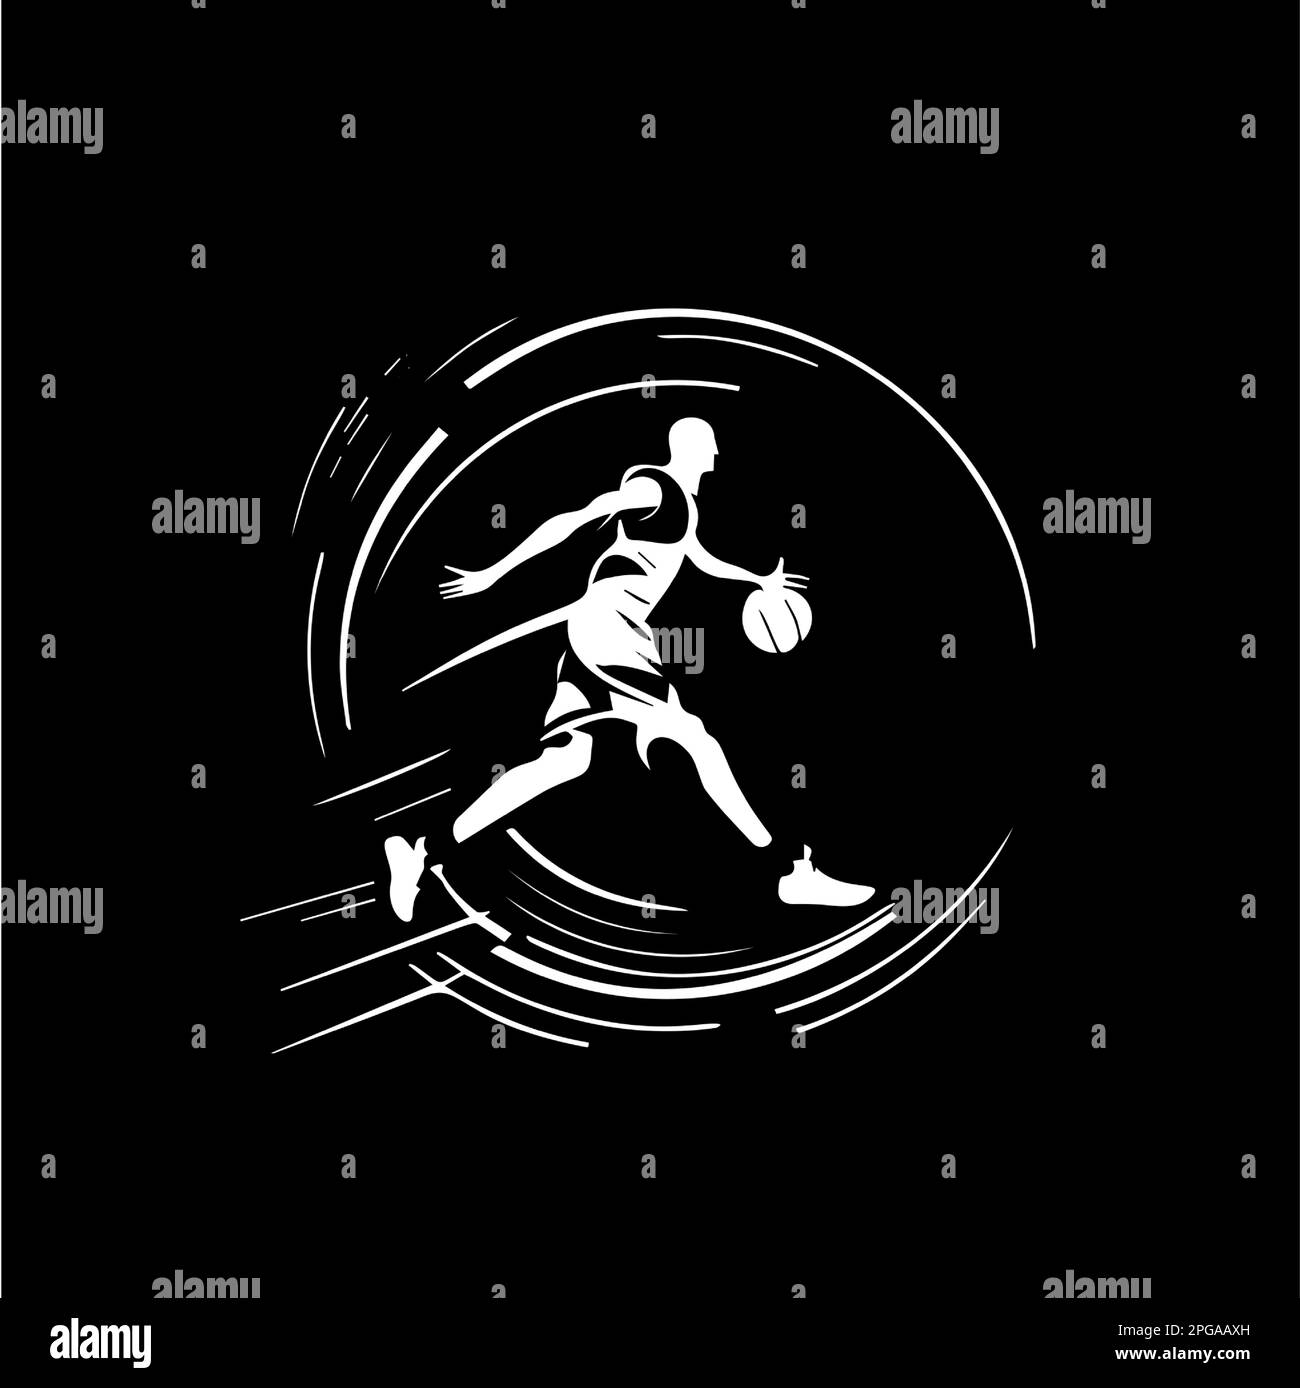 Weißes Emblem des Basketballspielers, Laufdribbeln mit Ball, Action-Spieler-Symbol, Logo-Vorlage, Hand-Malen-Tattoo-Silhouette auf Schwarz Stock Vektor